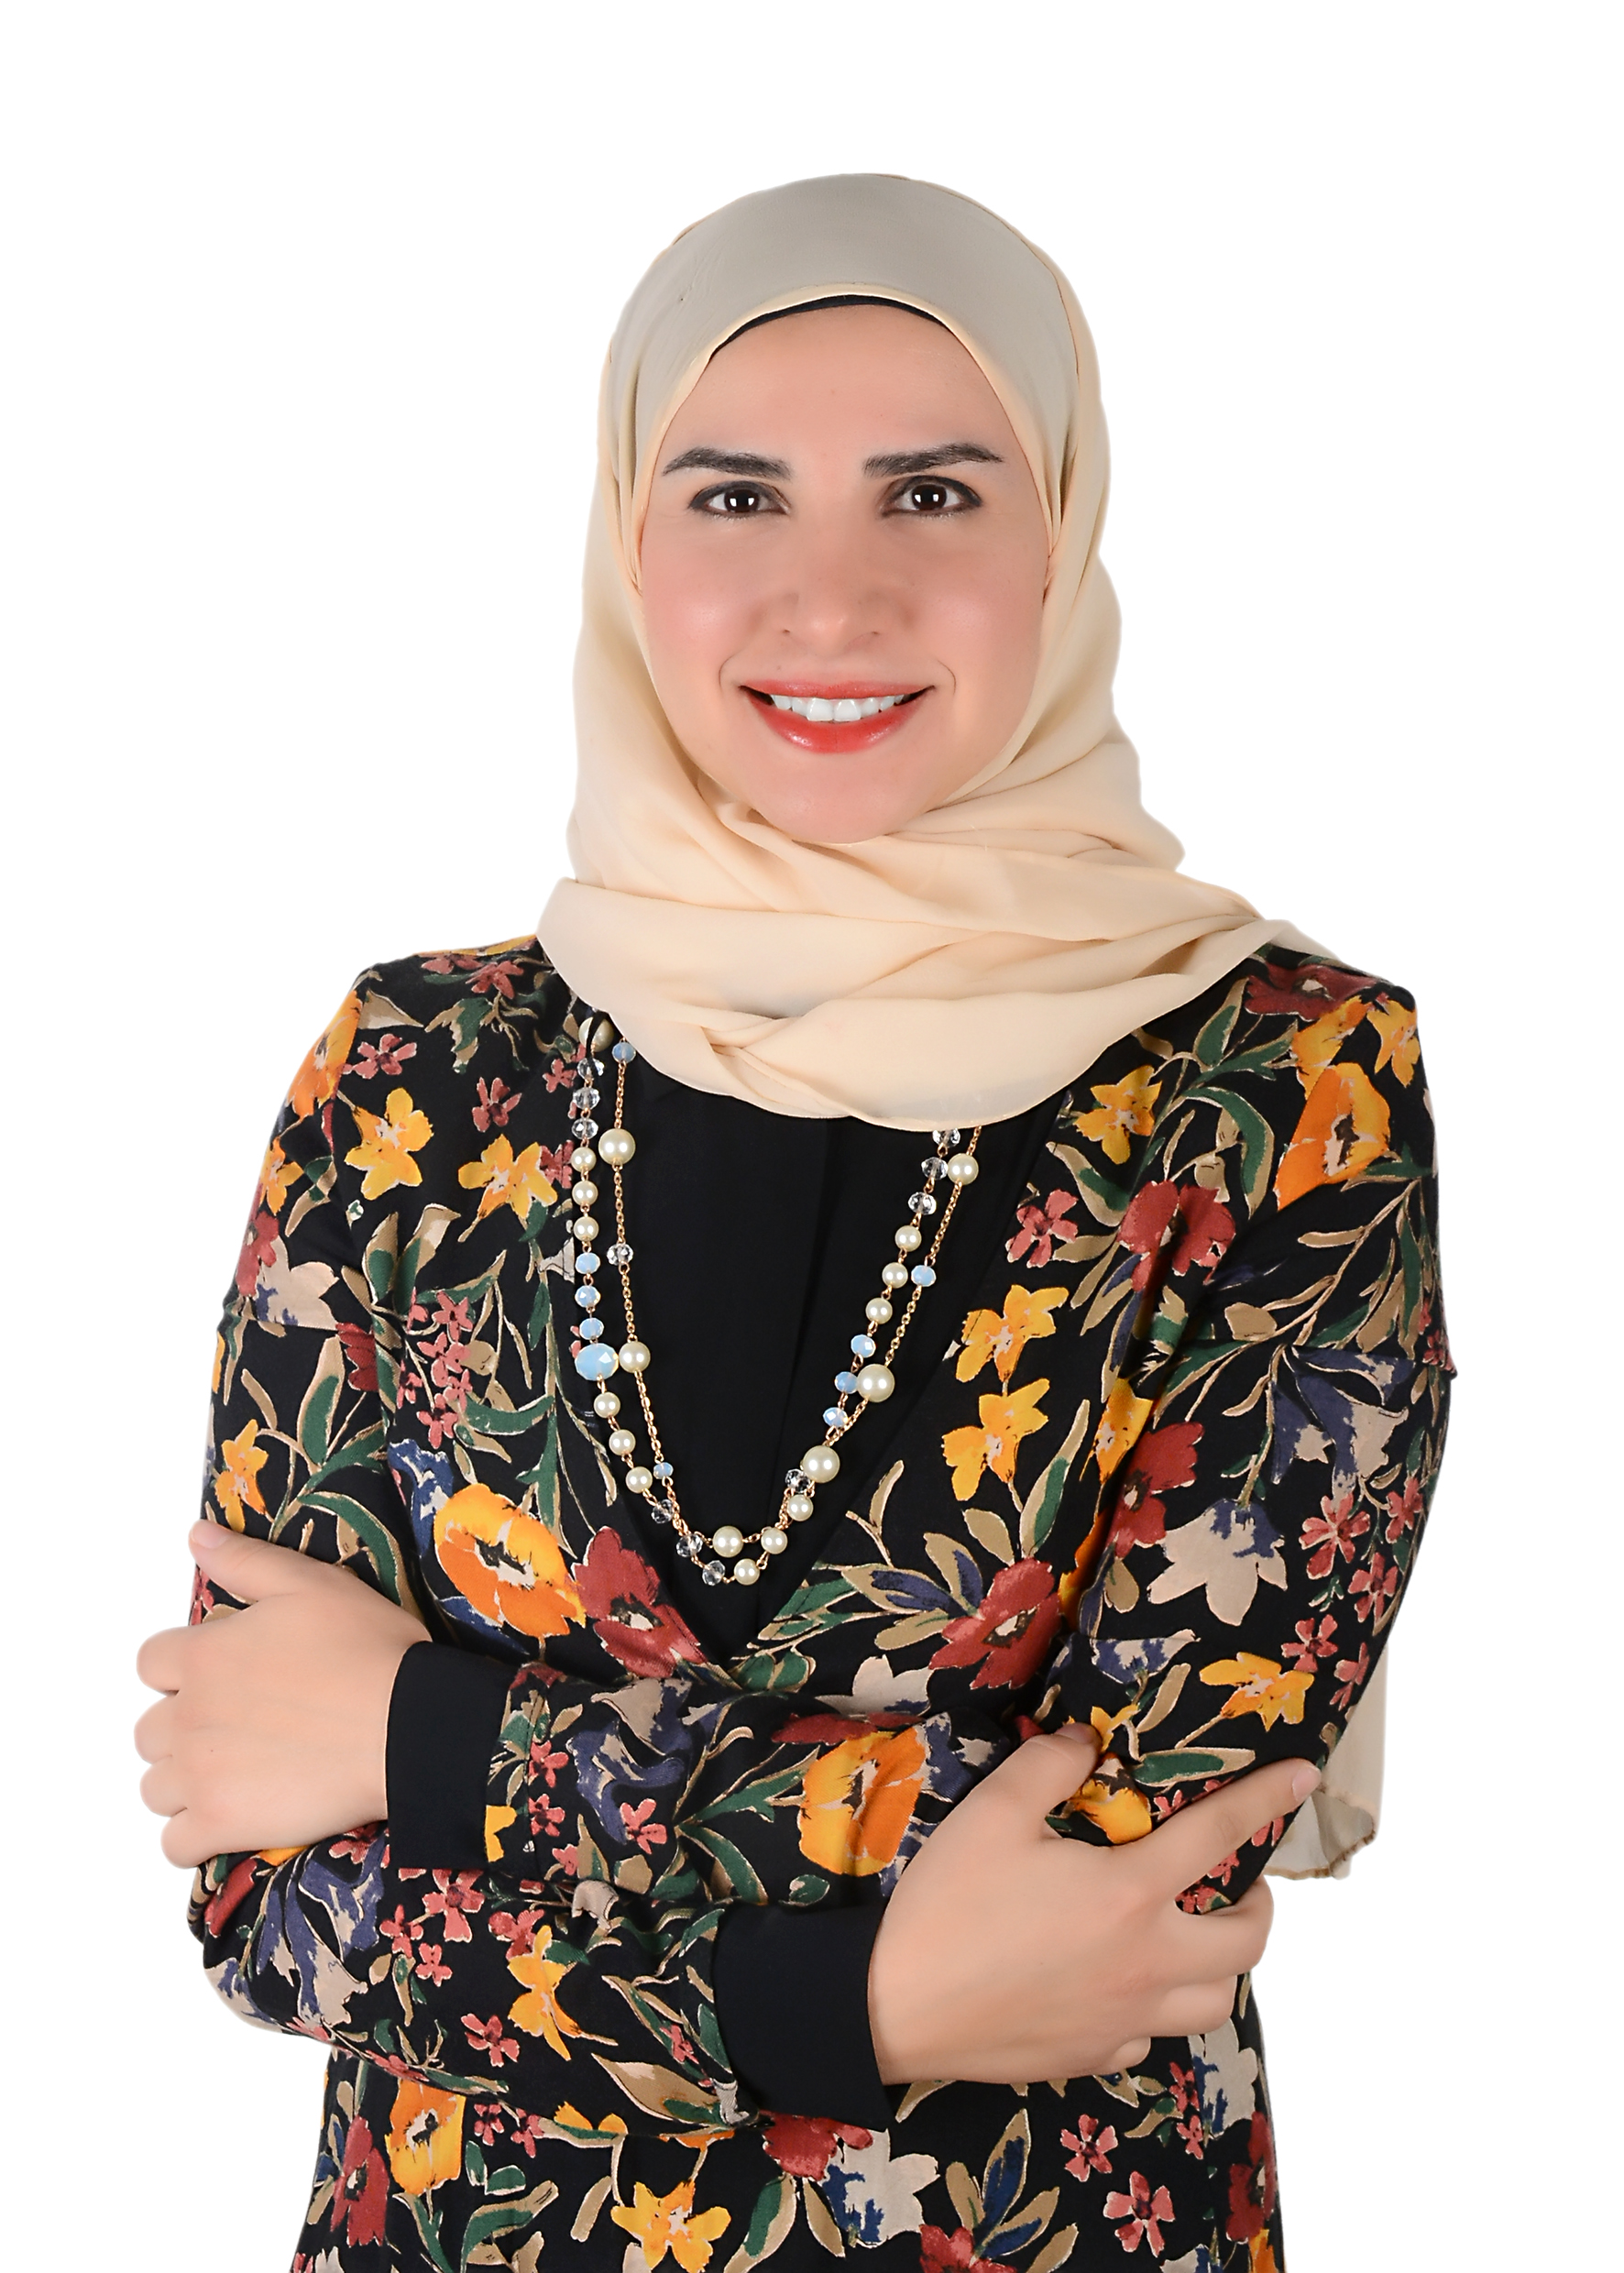 Dr Amira Abdullah